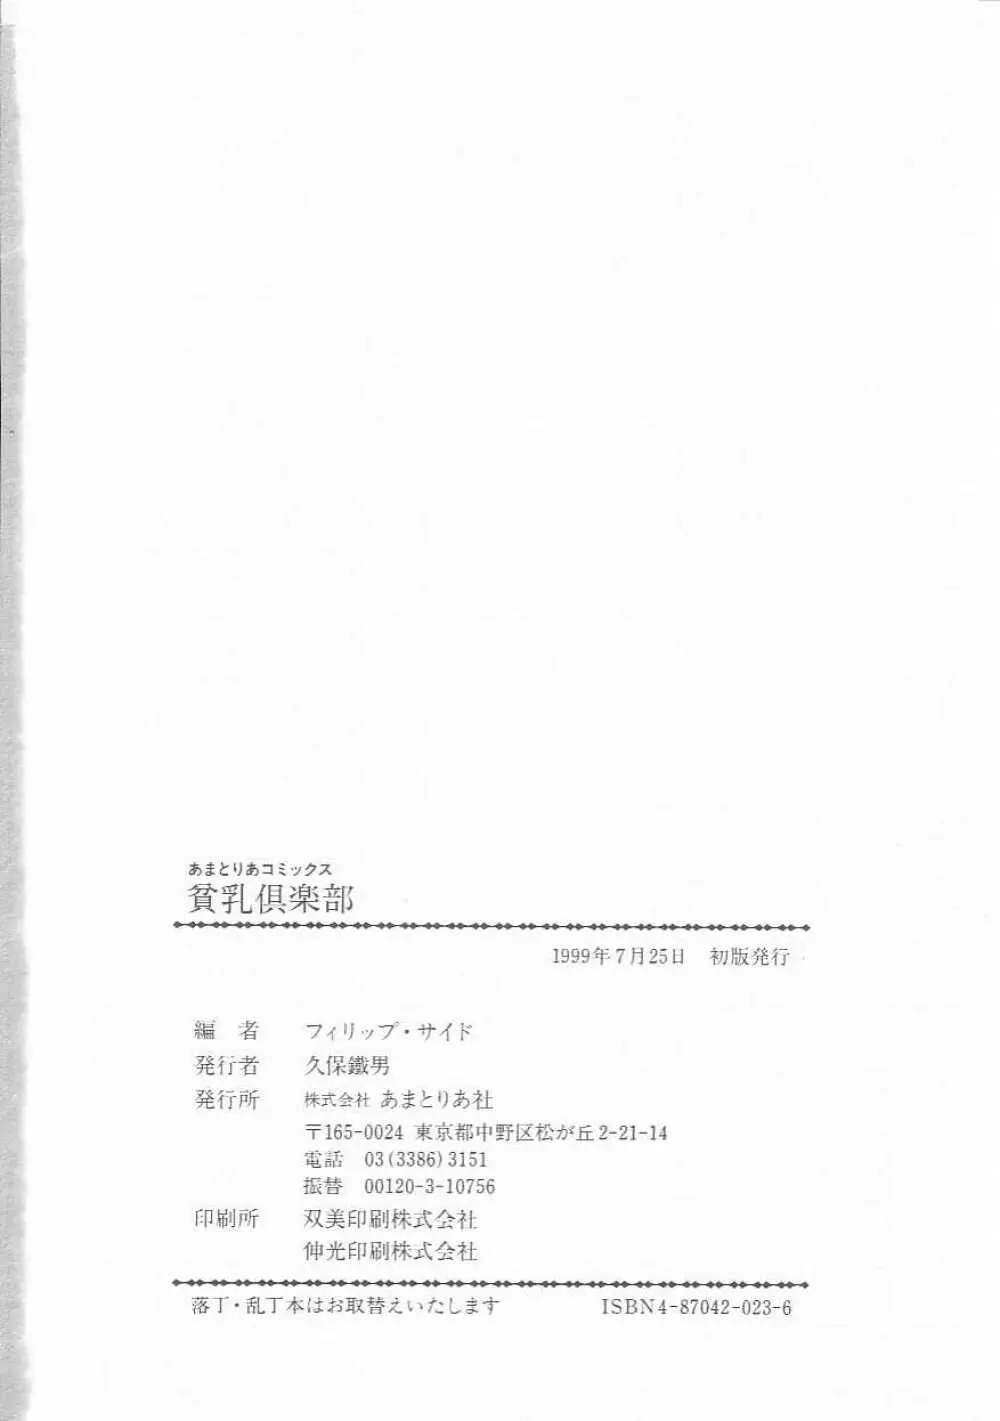 Hin-nyu v01 – Hin-nyu Kurabu.rar 145ページ